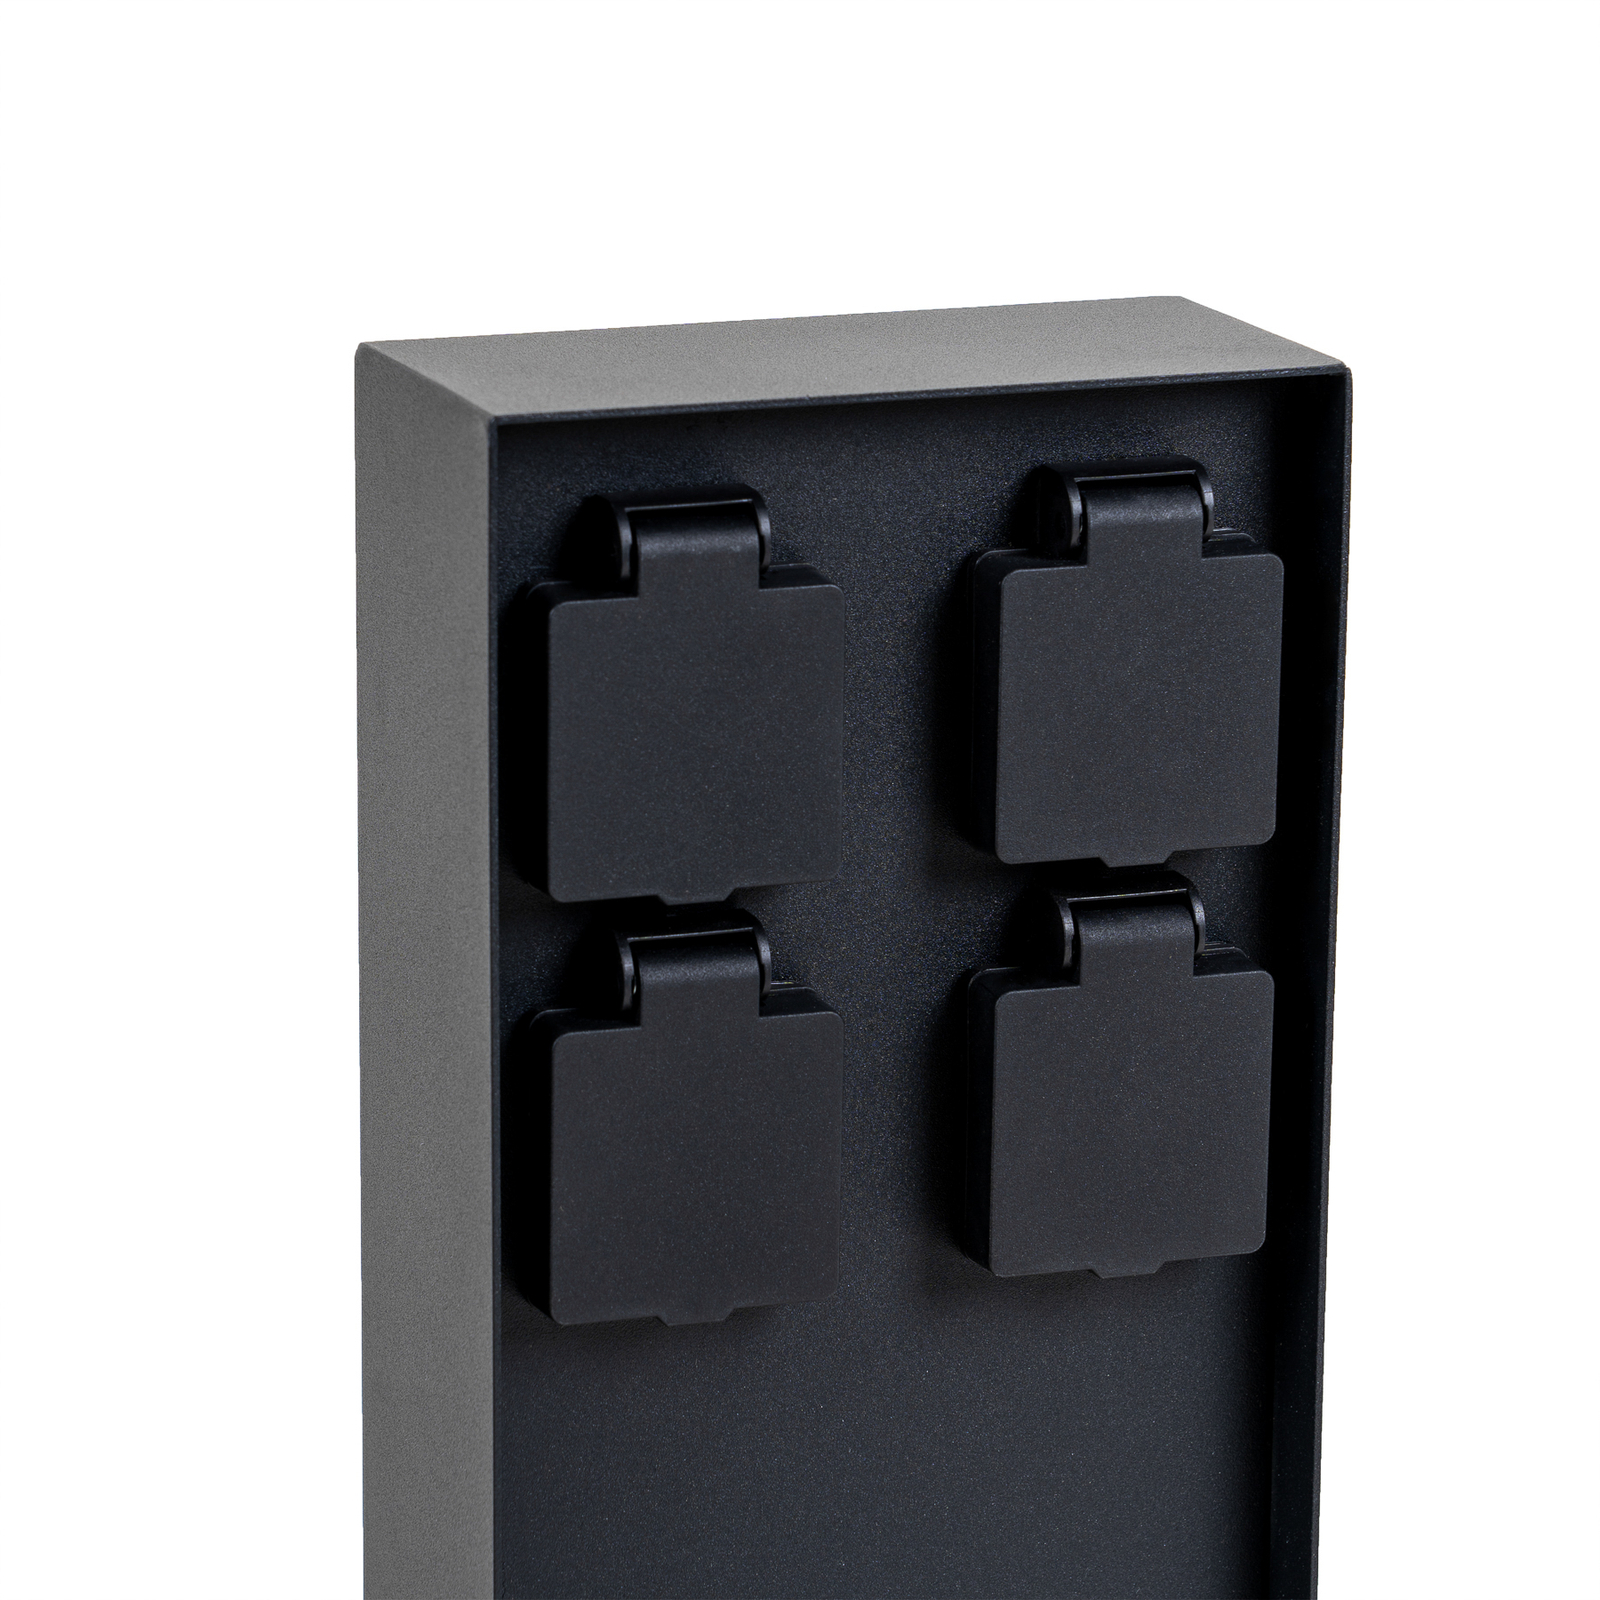 Prios Foranda energijski stolpec, 4 kosi, črn, 40 cm